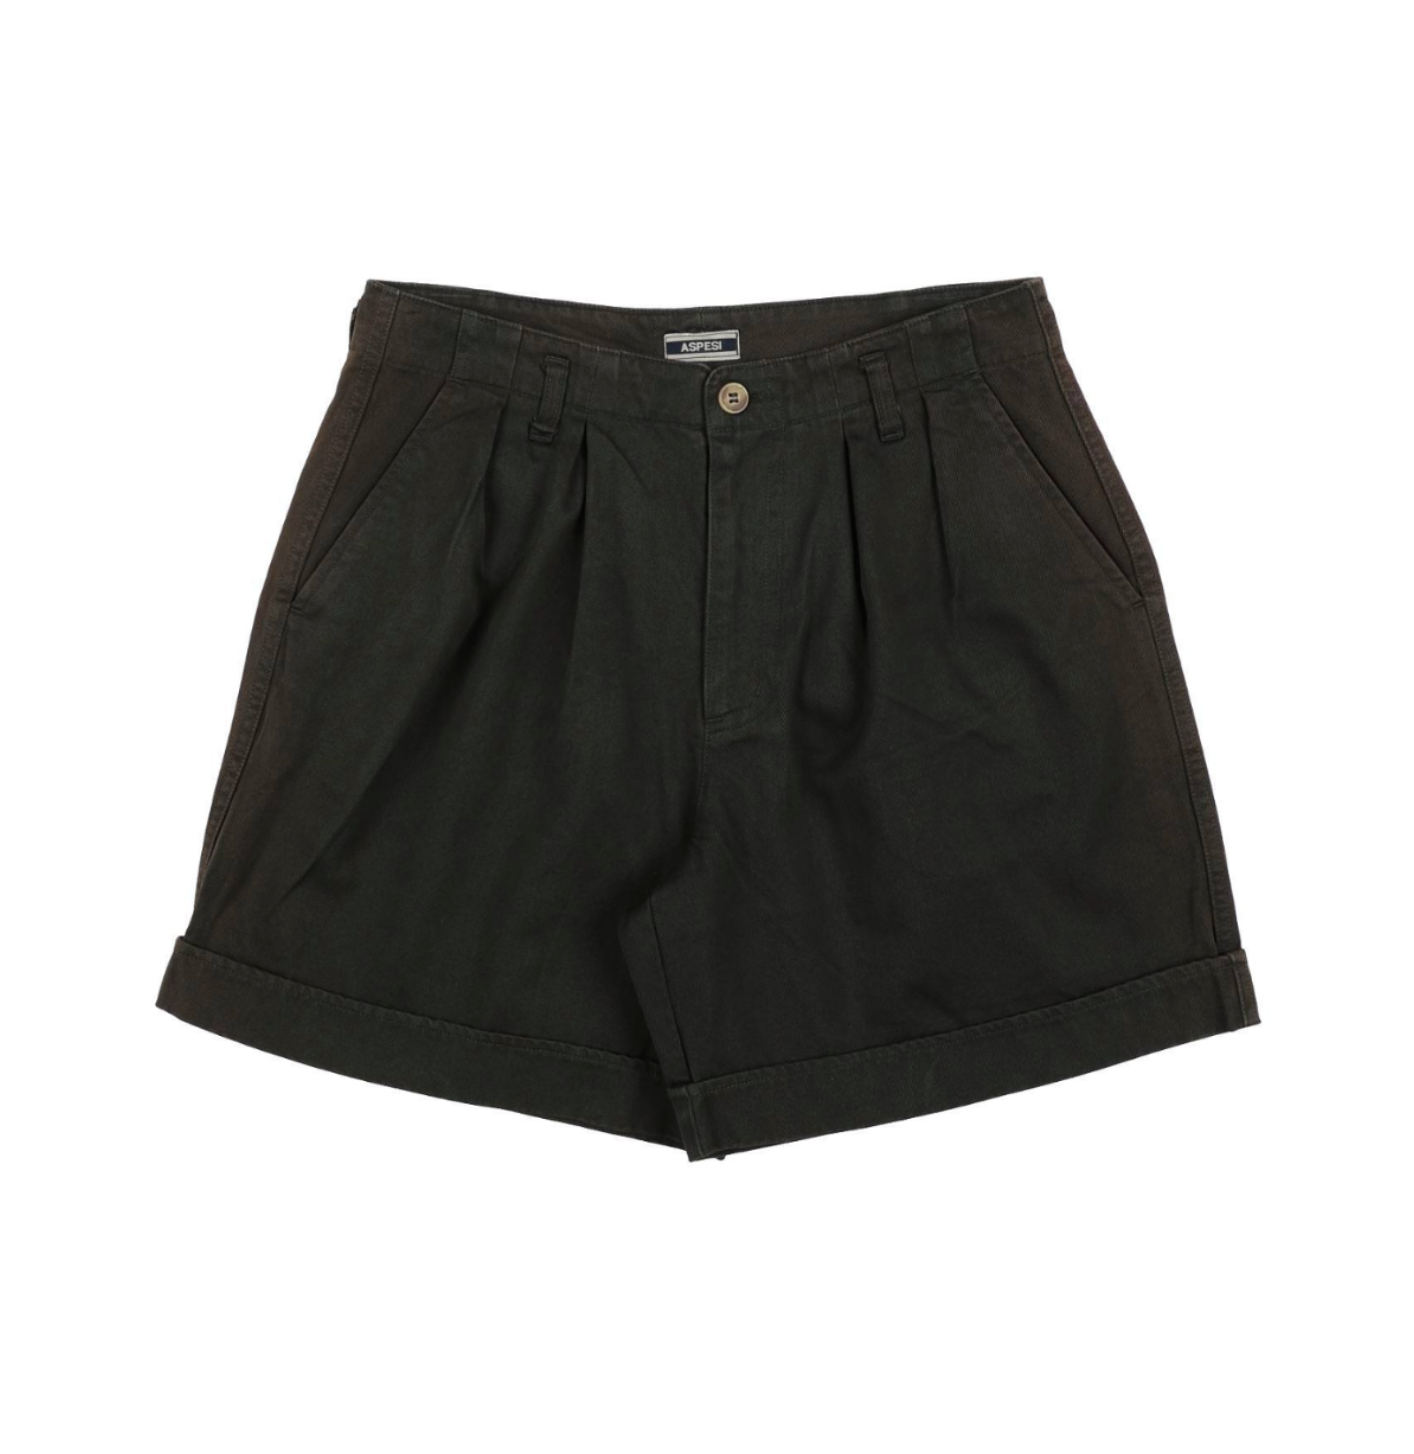 ASPESI - Khaki shorts - 10 years